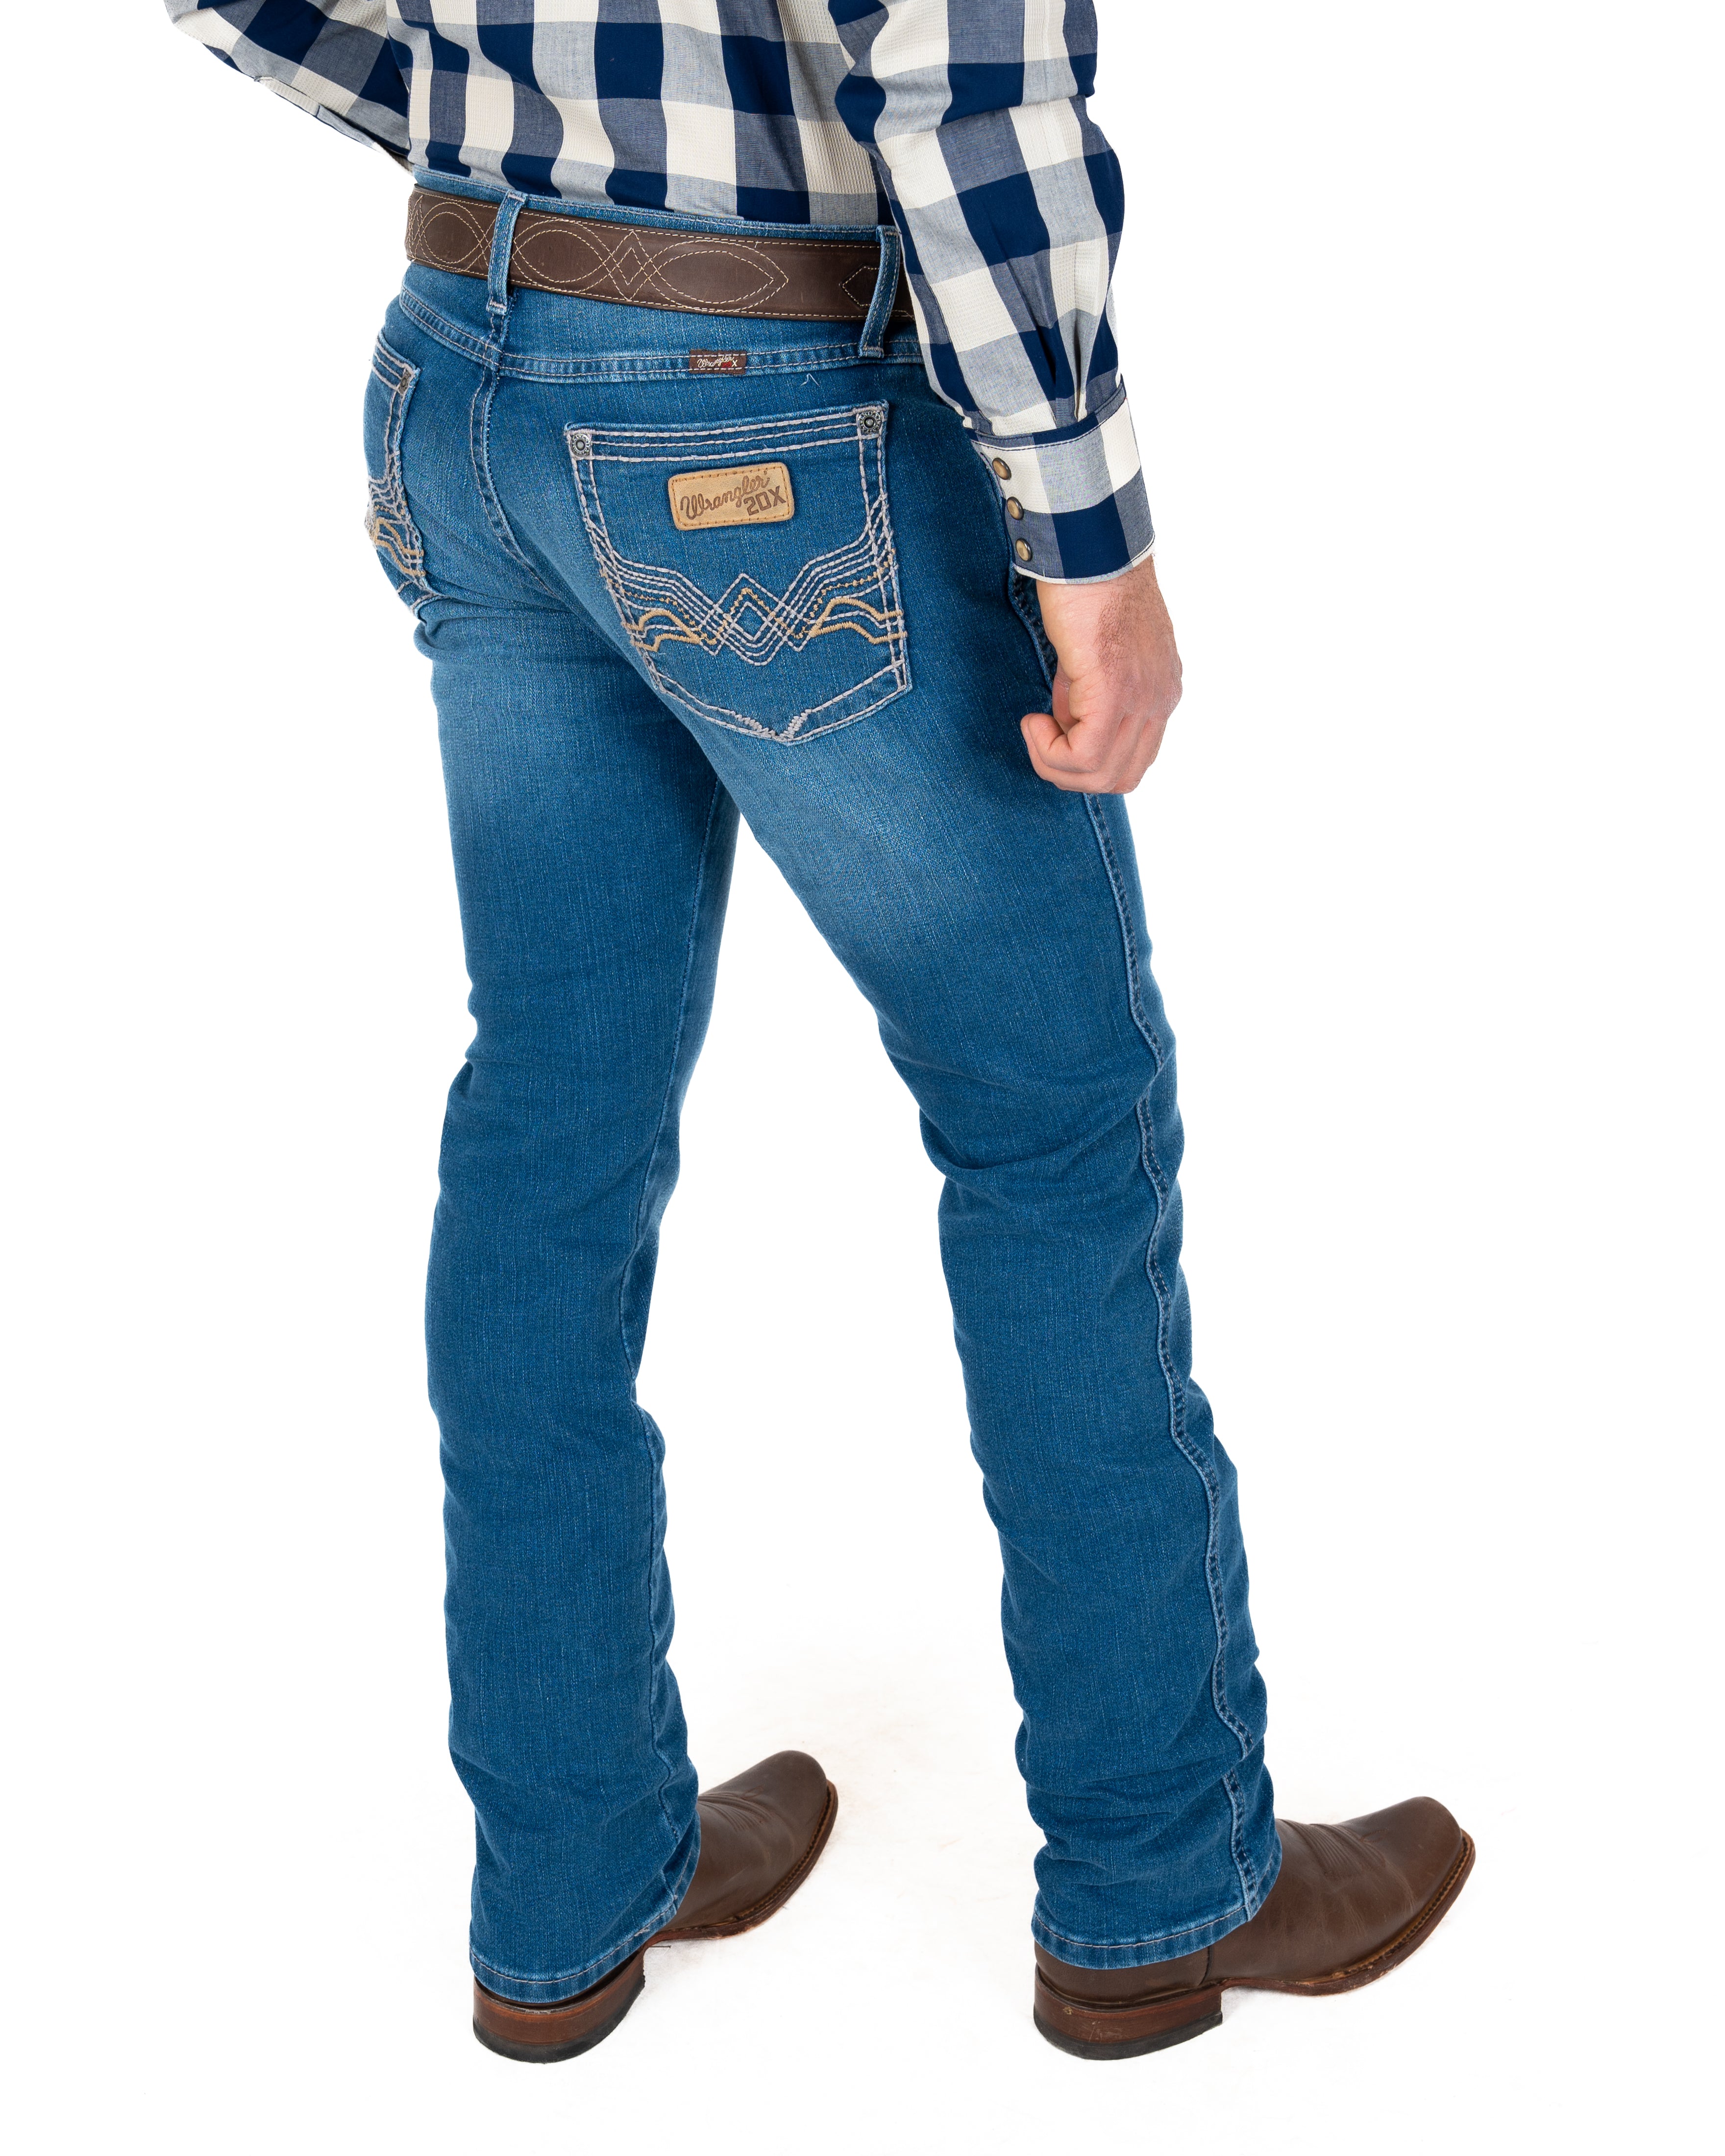 Jeans Wrangler Slim Straight Caballero